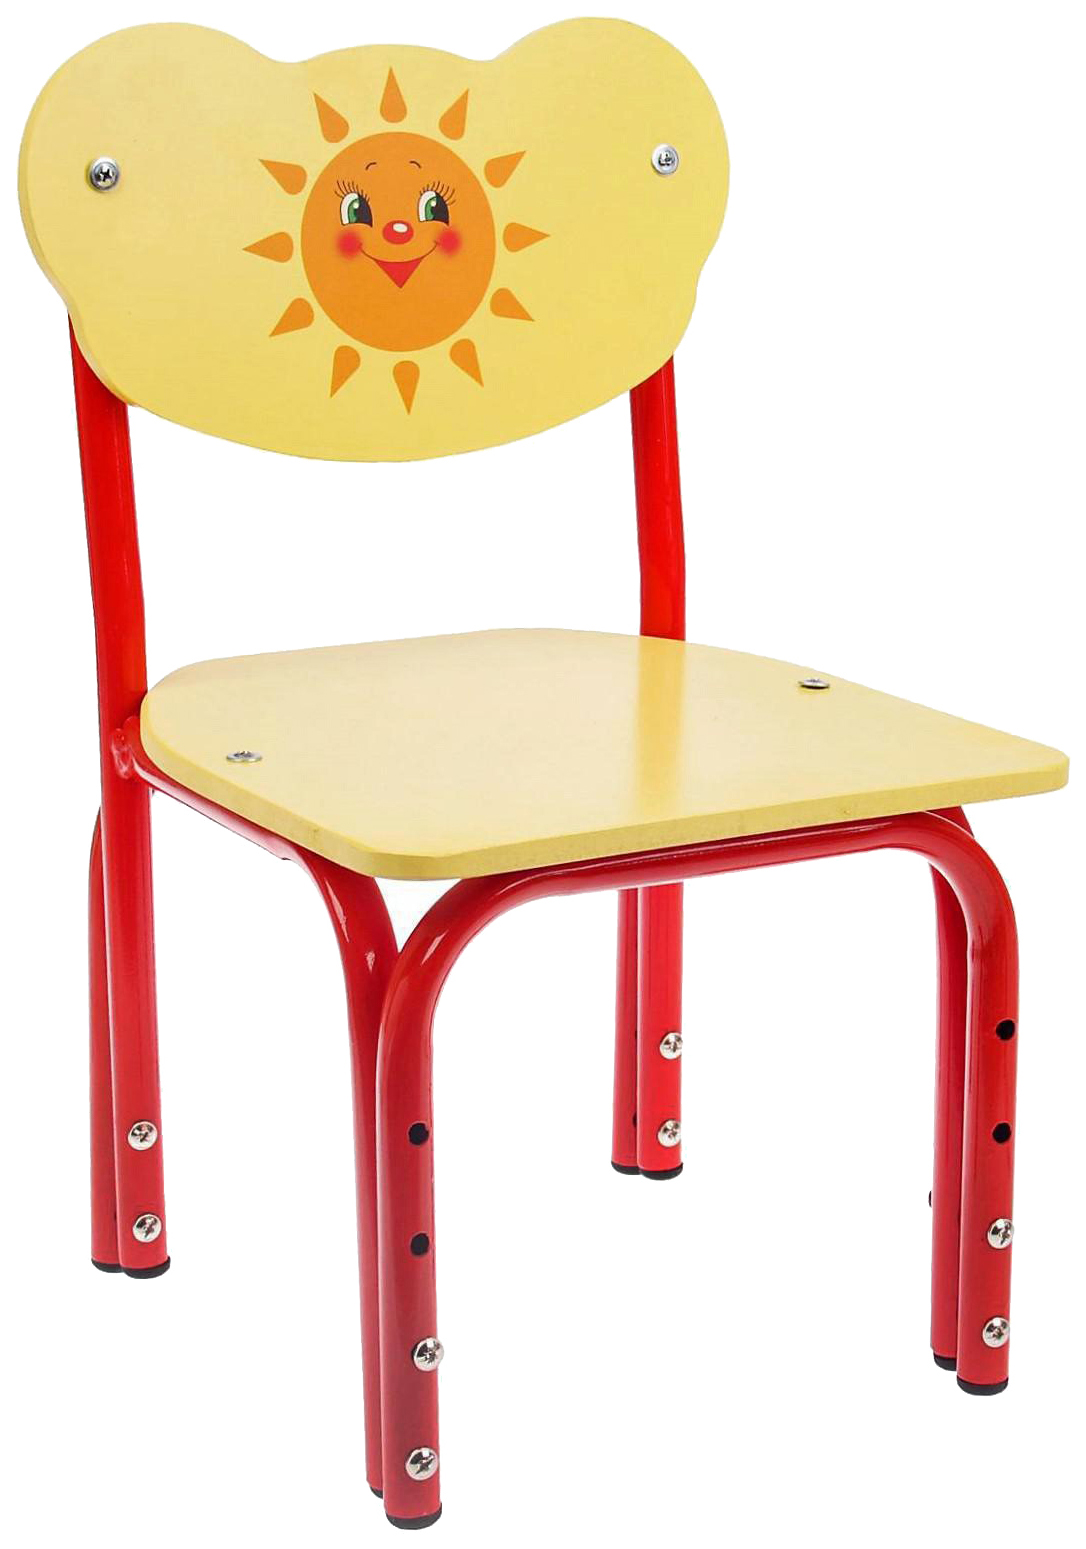 Детский стул Кузя. Солнышко, регулируемый, разборный растущий стул друг кузя оранжевый